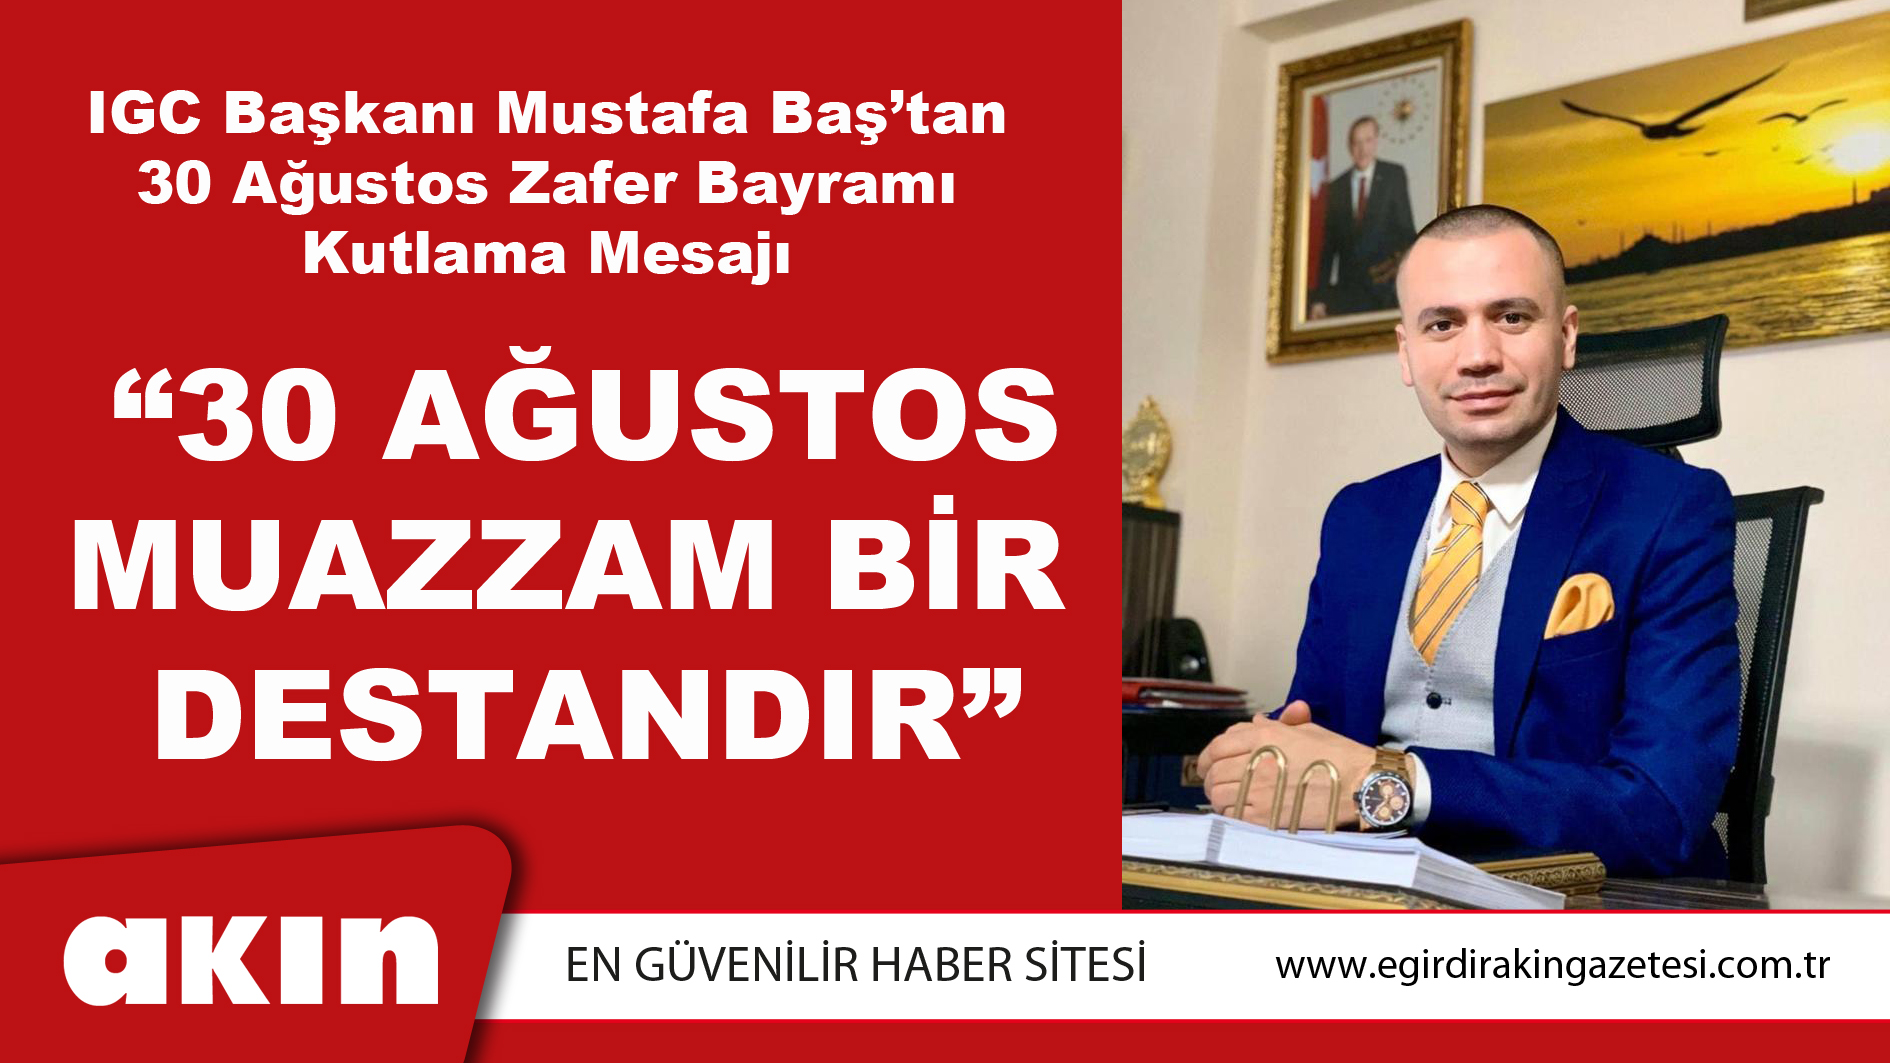 IGC Başkanı Mustafa Baş; “30 Ağustos Muazzam Bir Destandır”